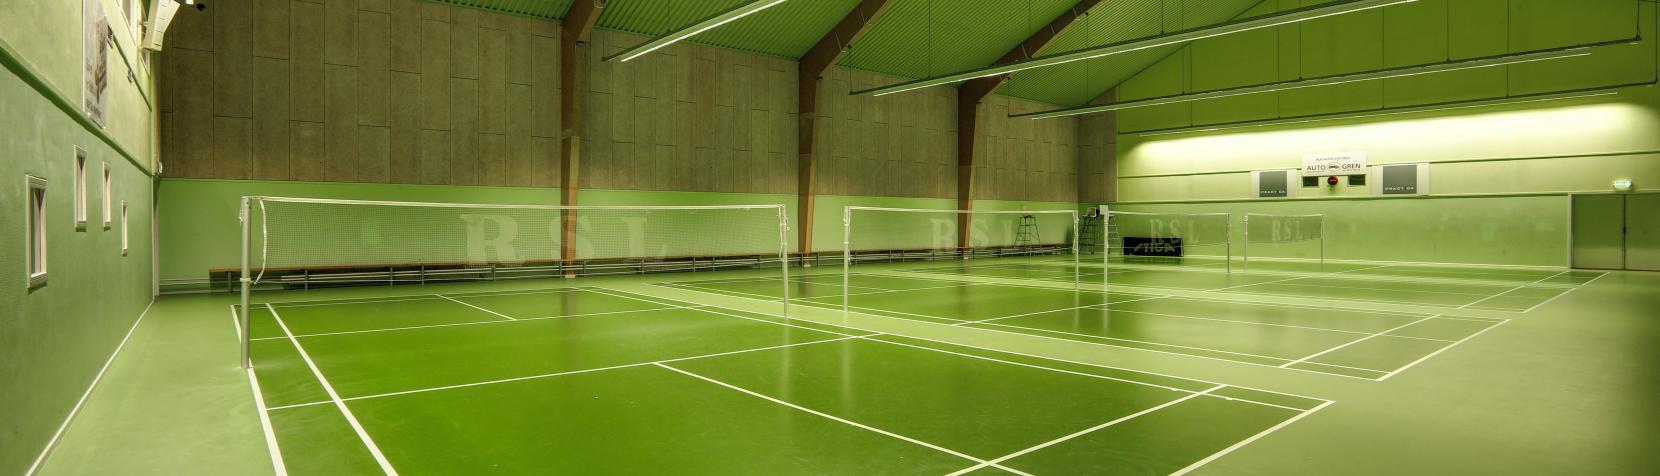 Foto: Birkerød Badmintonhal - indendørs